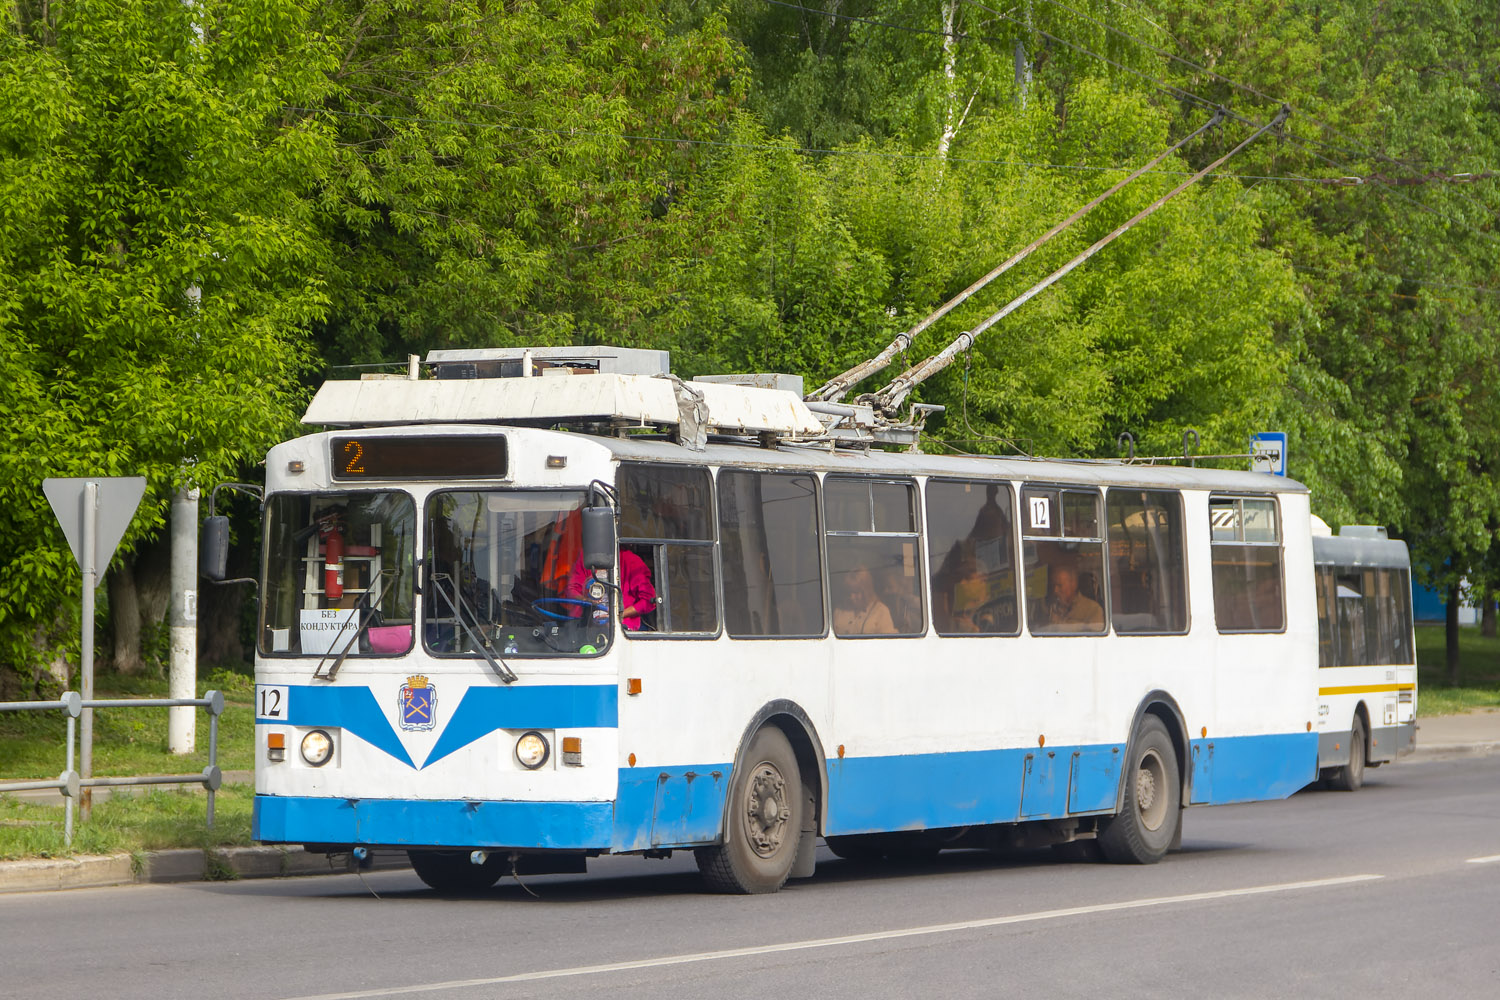 Маршрут троллейбусов подольск